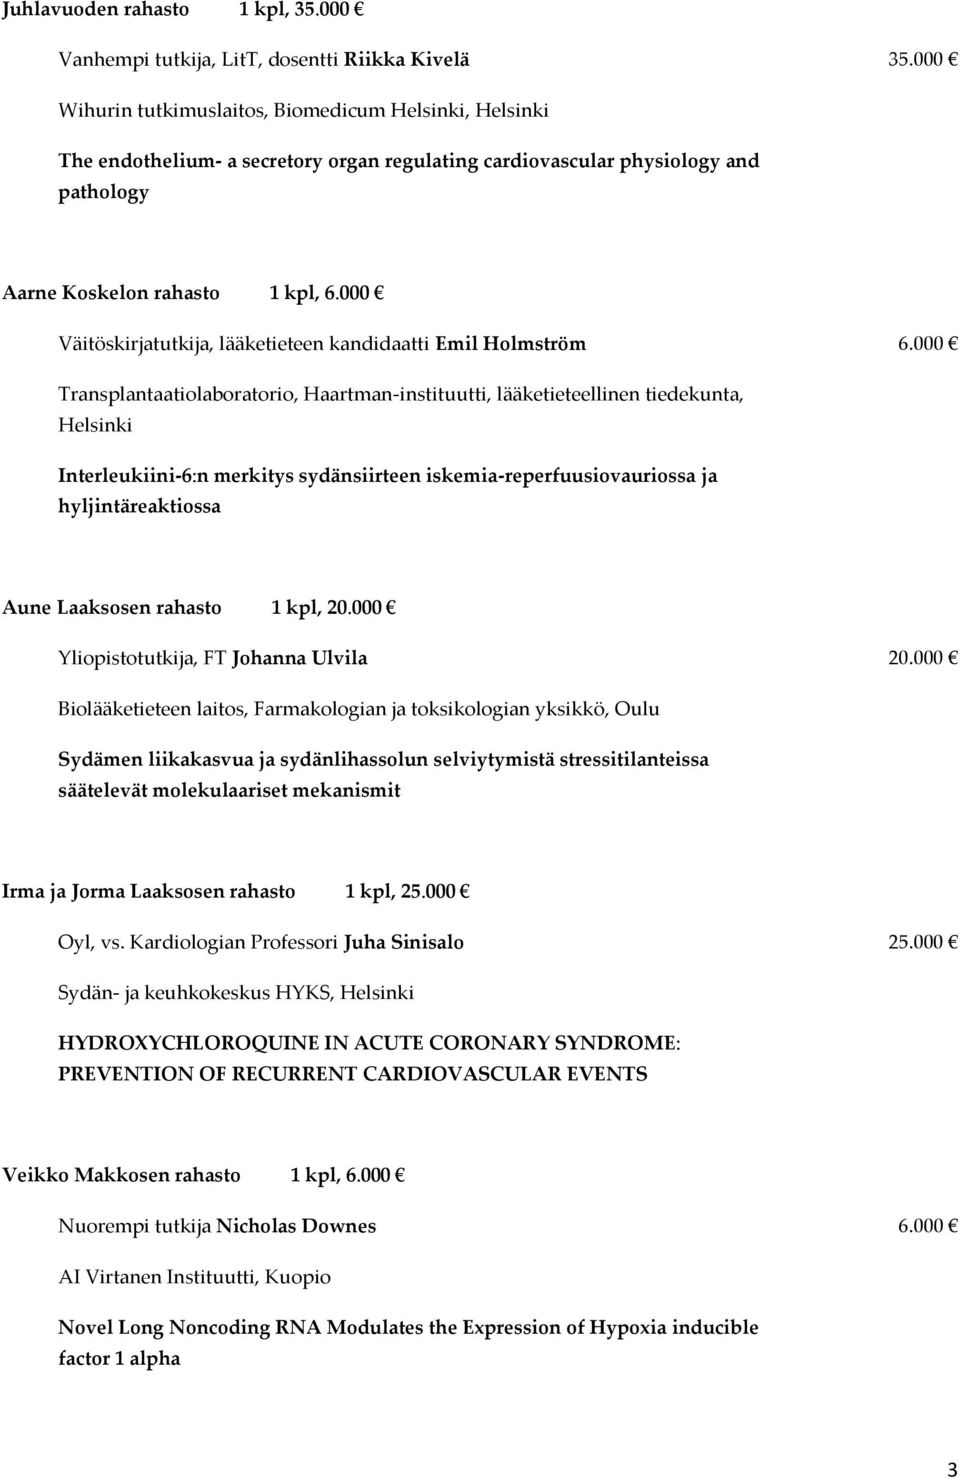 000 Väitöskirjatutkija, lääketieteen kandidaatti Emil Holmström 6.